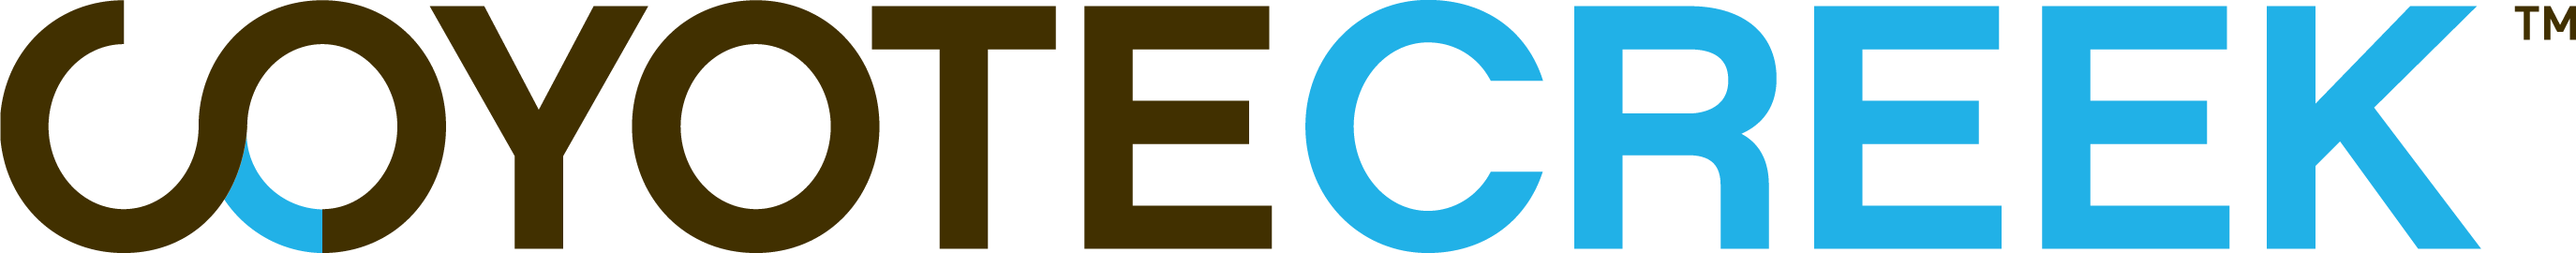 CC_cmyk_logo